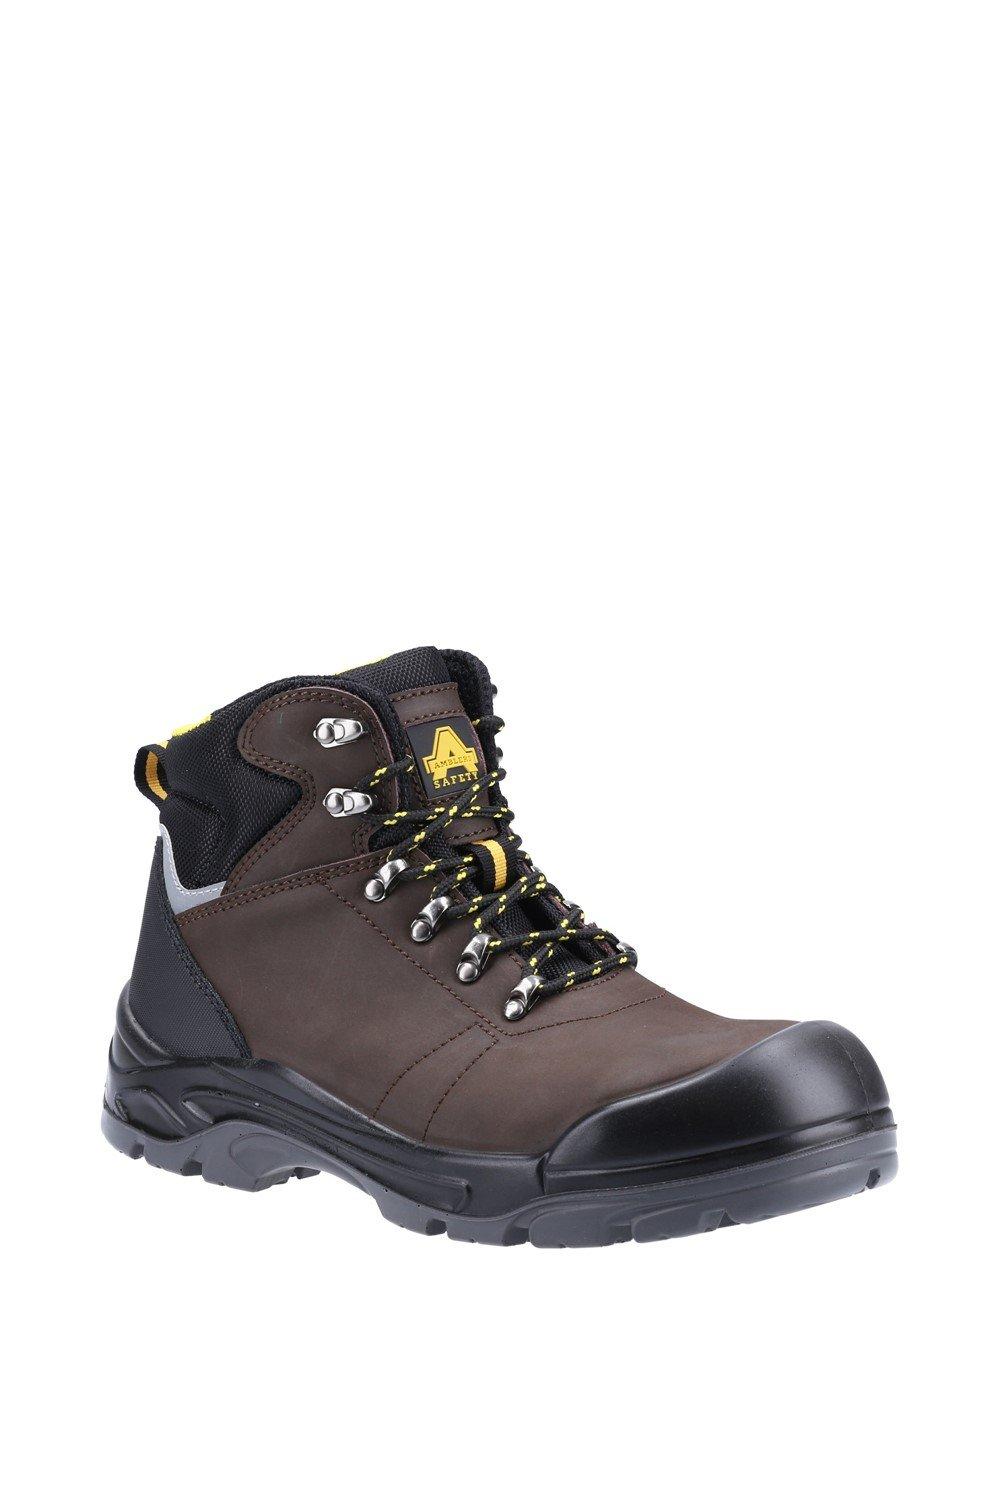 Защитные ботинки AS203 Laymore Amblers Safety, коричневый ботинки мужские рабочие со стальным носком легкие защитные нескользящие дышащие кроссовки для строительства стальной носок